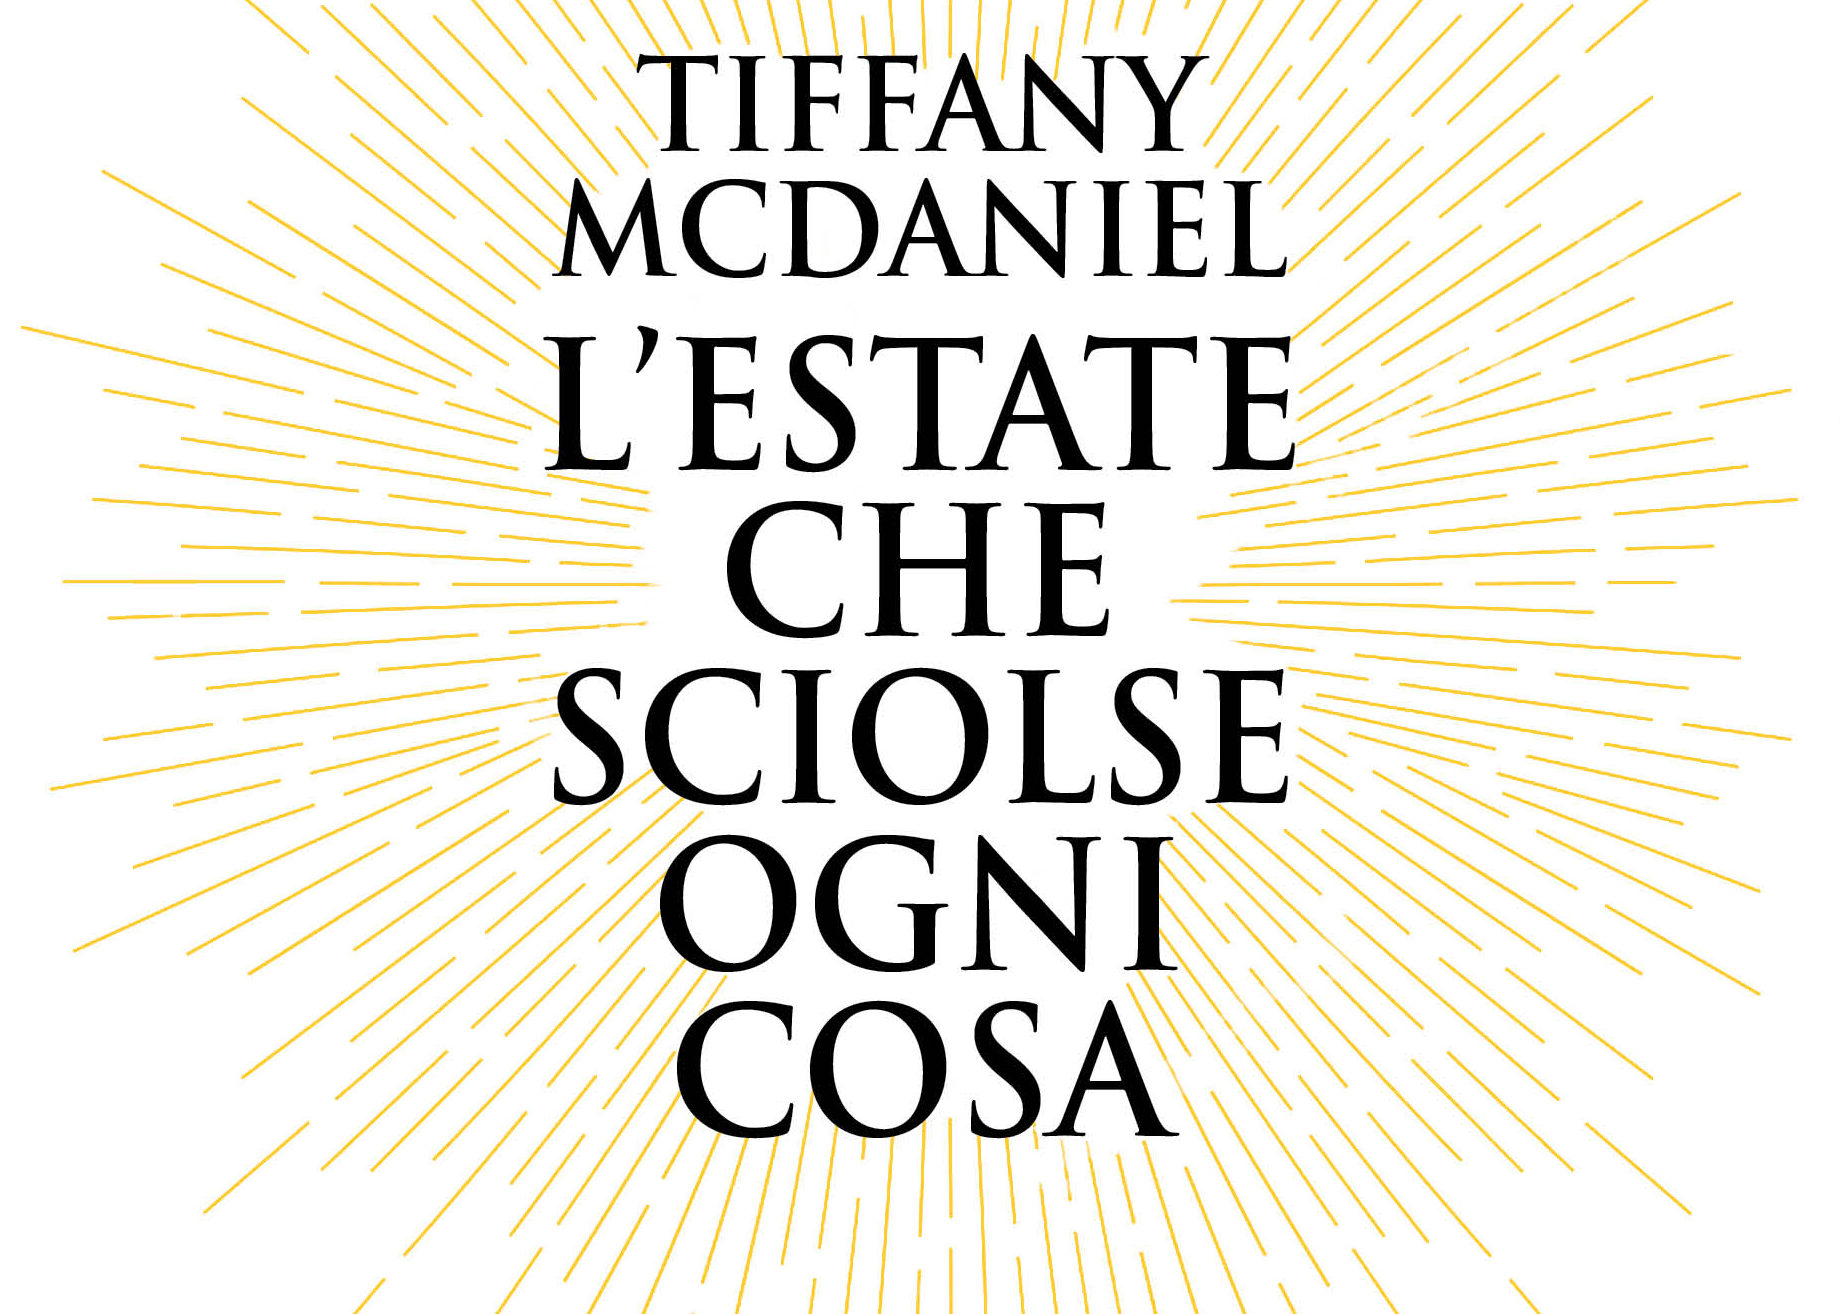 I libri di Venere 50:  Tiffany McDaniel, ”L’estate che sciolse ogni cosa”